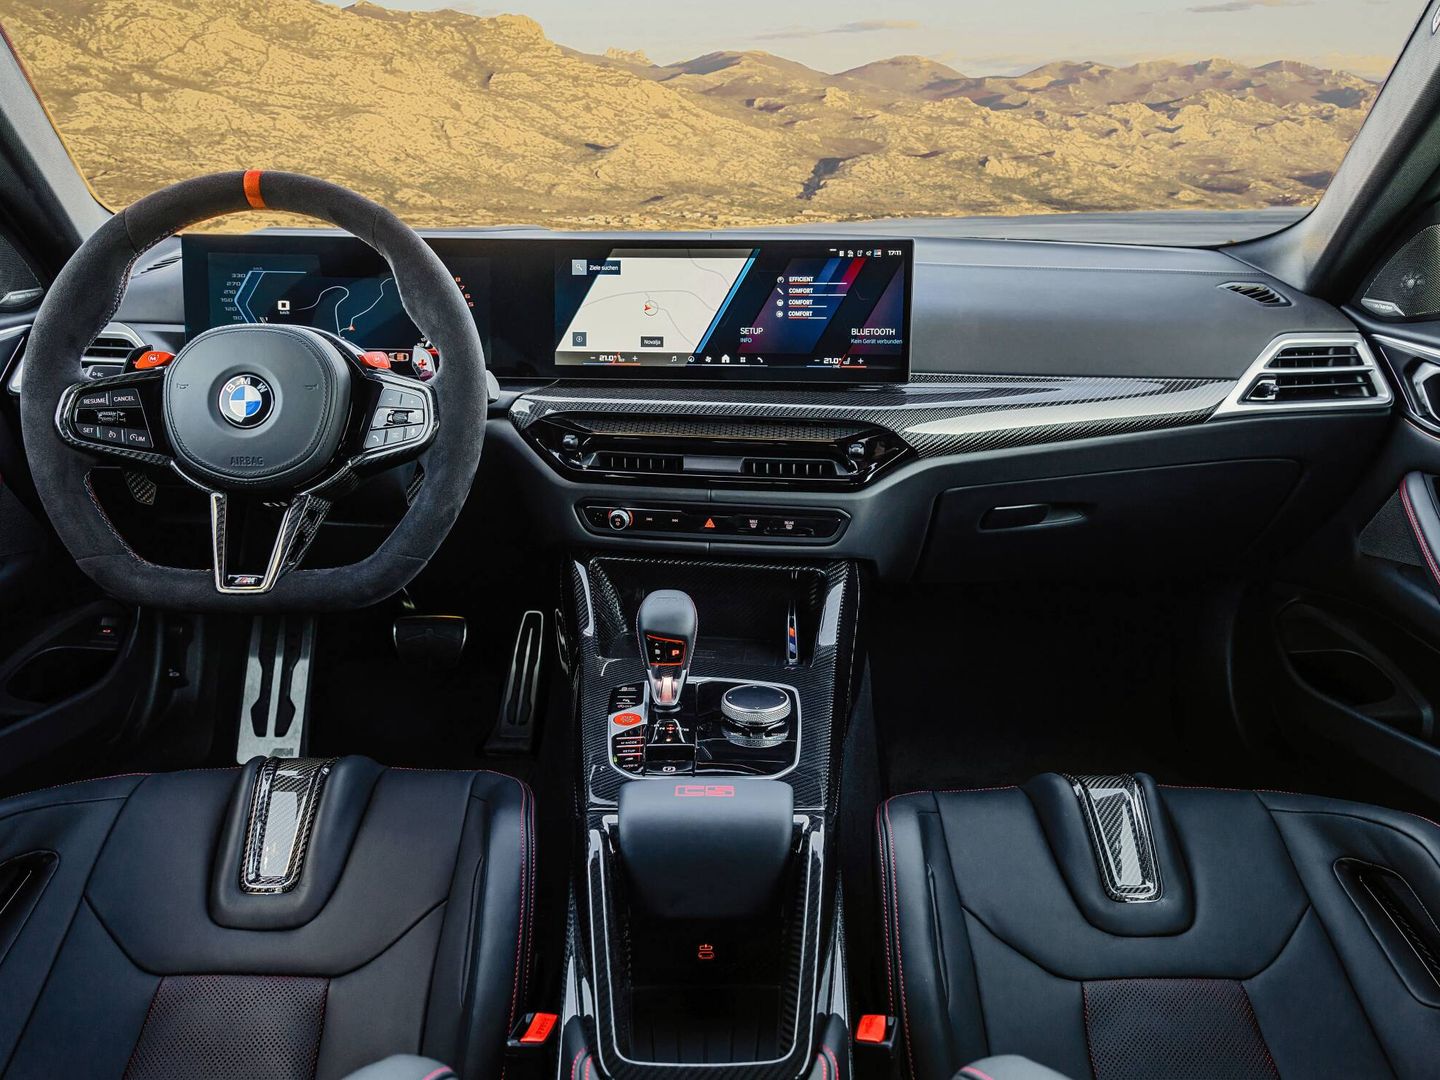 Equipa el BMW Curved Display, con una instrumentación de 12,3 pulgadas y otra central de 14,9. 